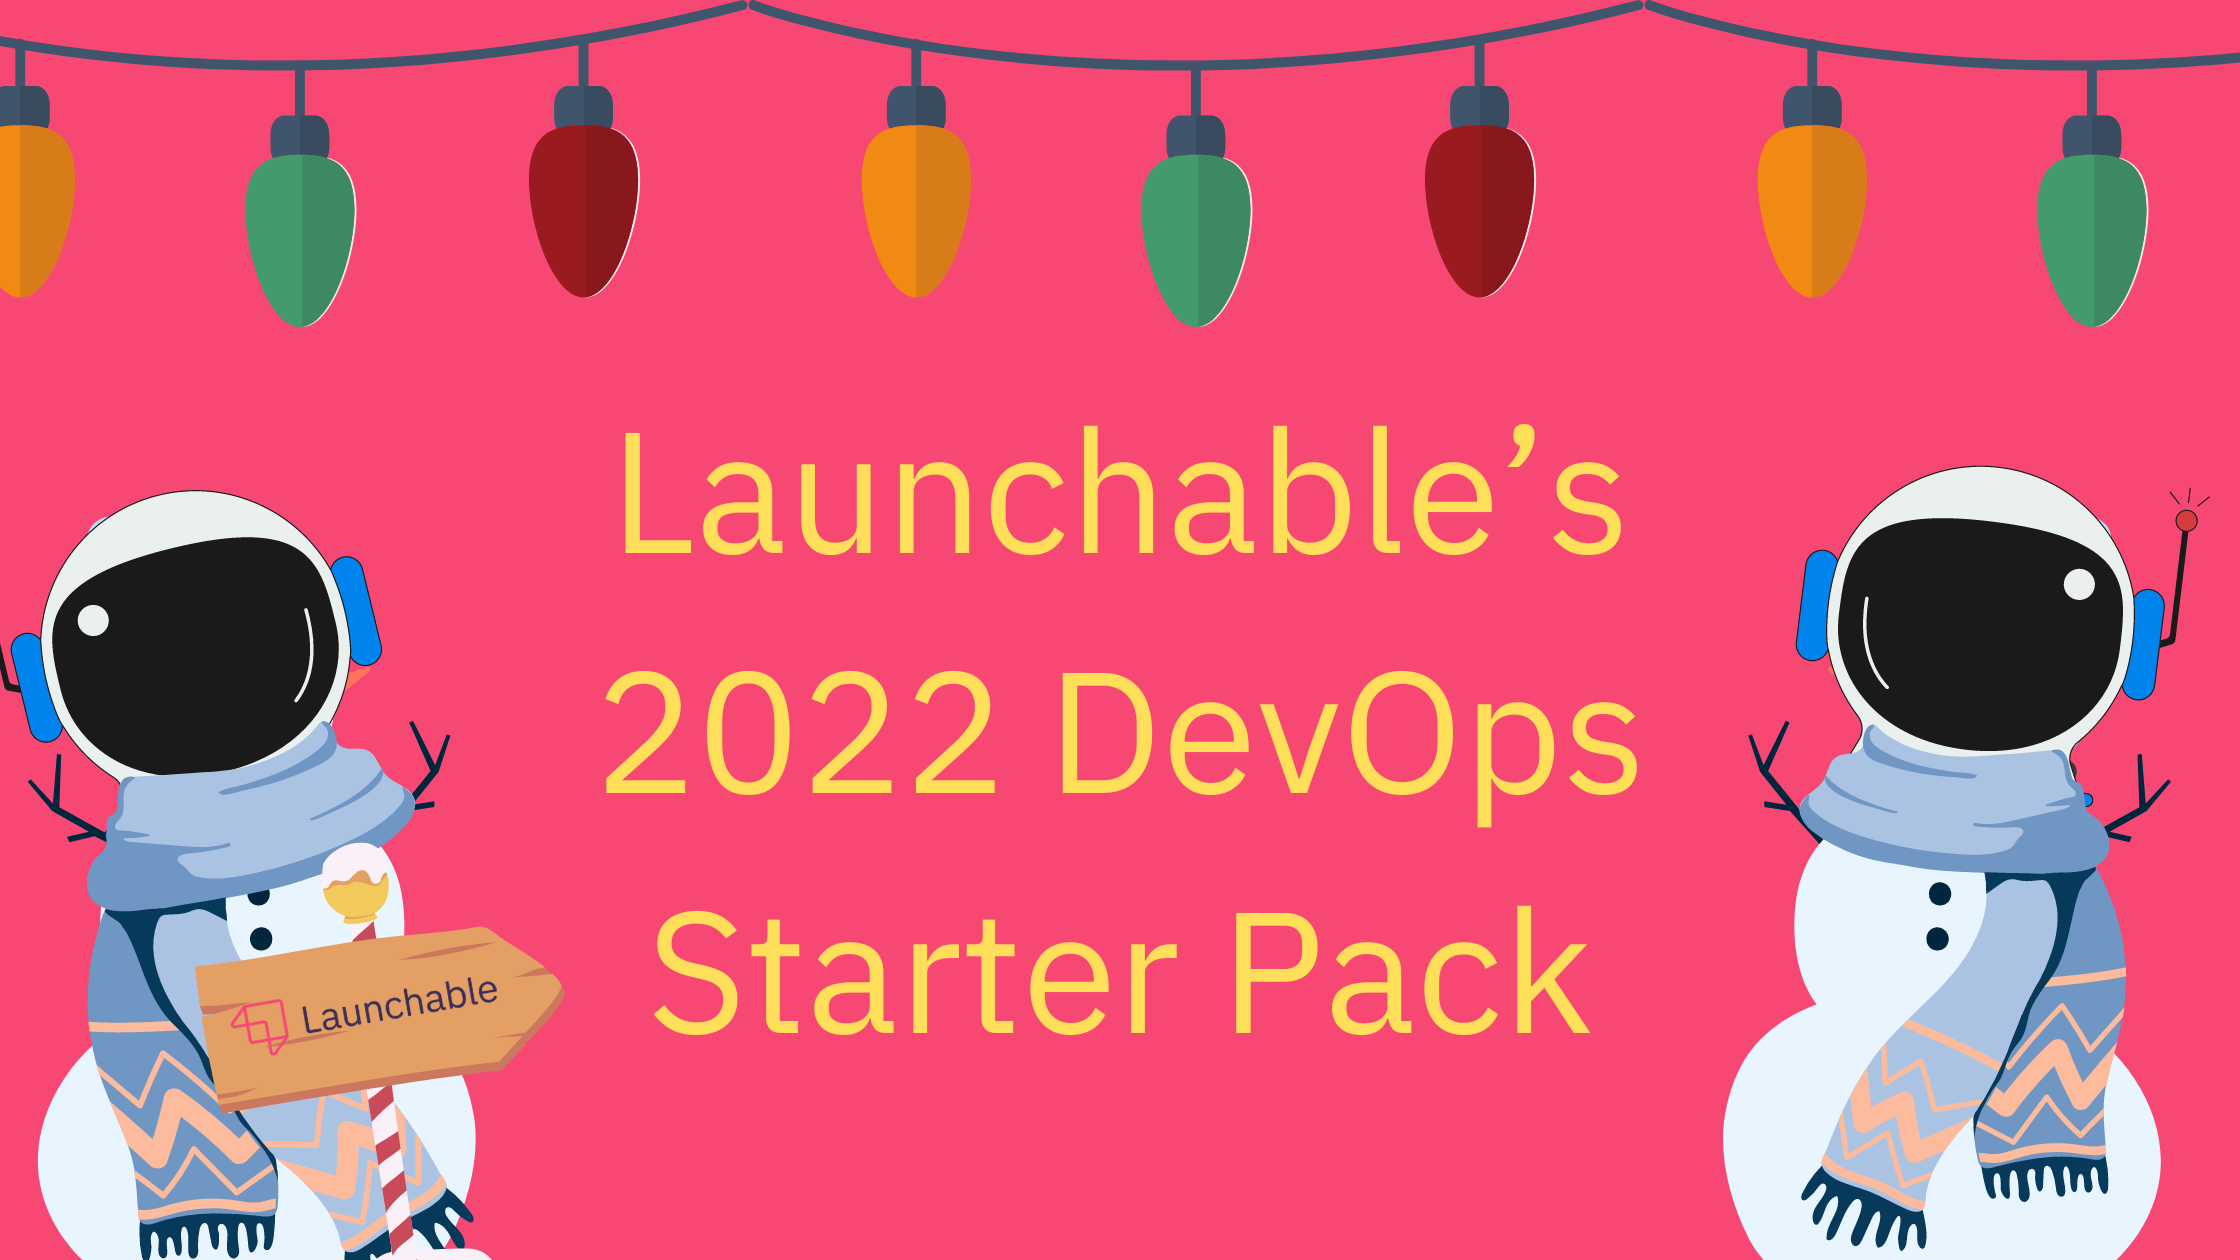 Launchable’s 2022 DevOps Starter Pack